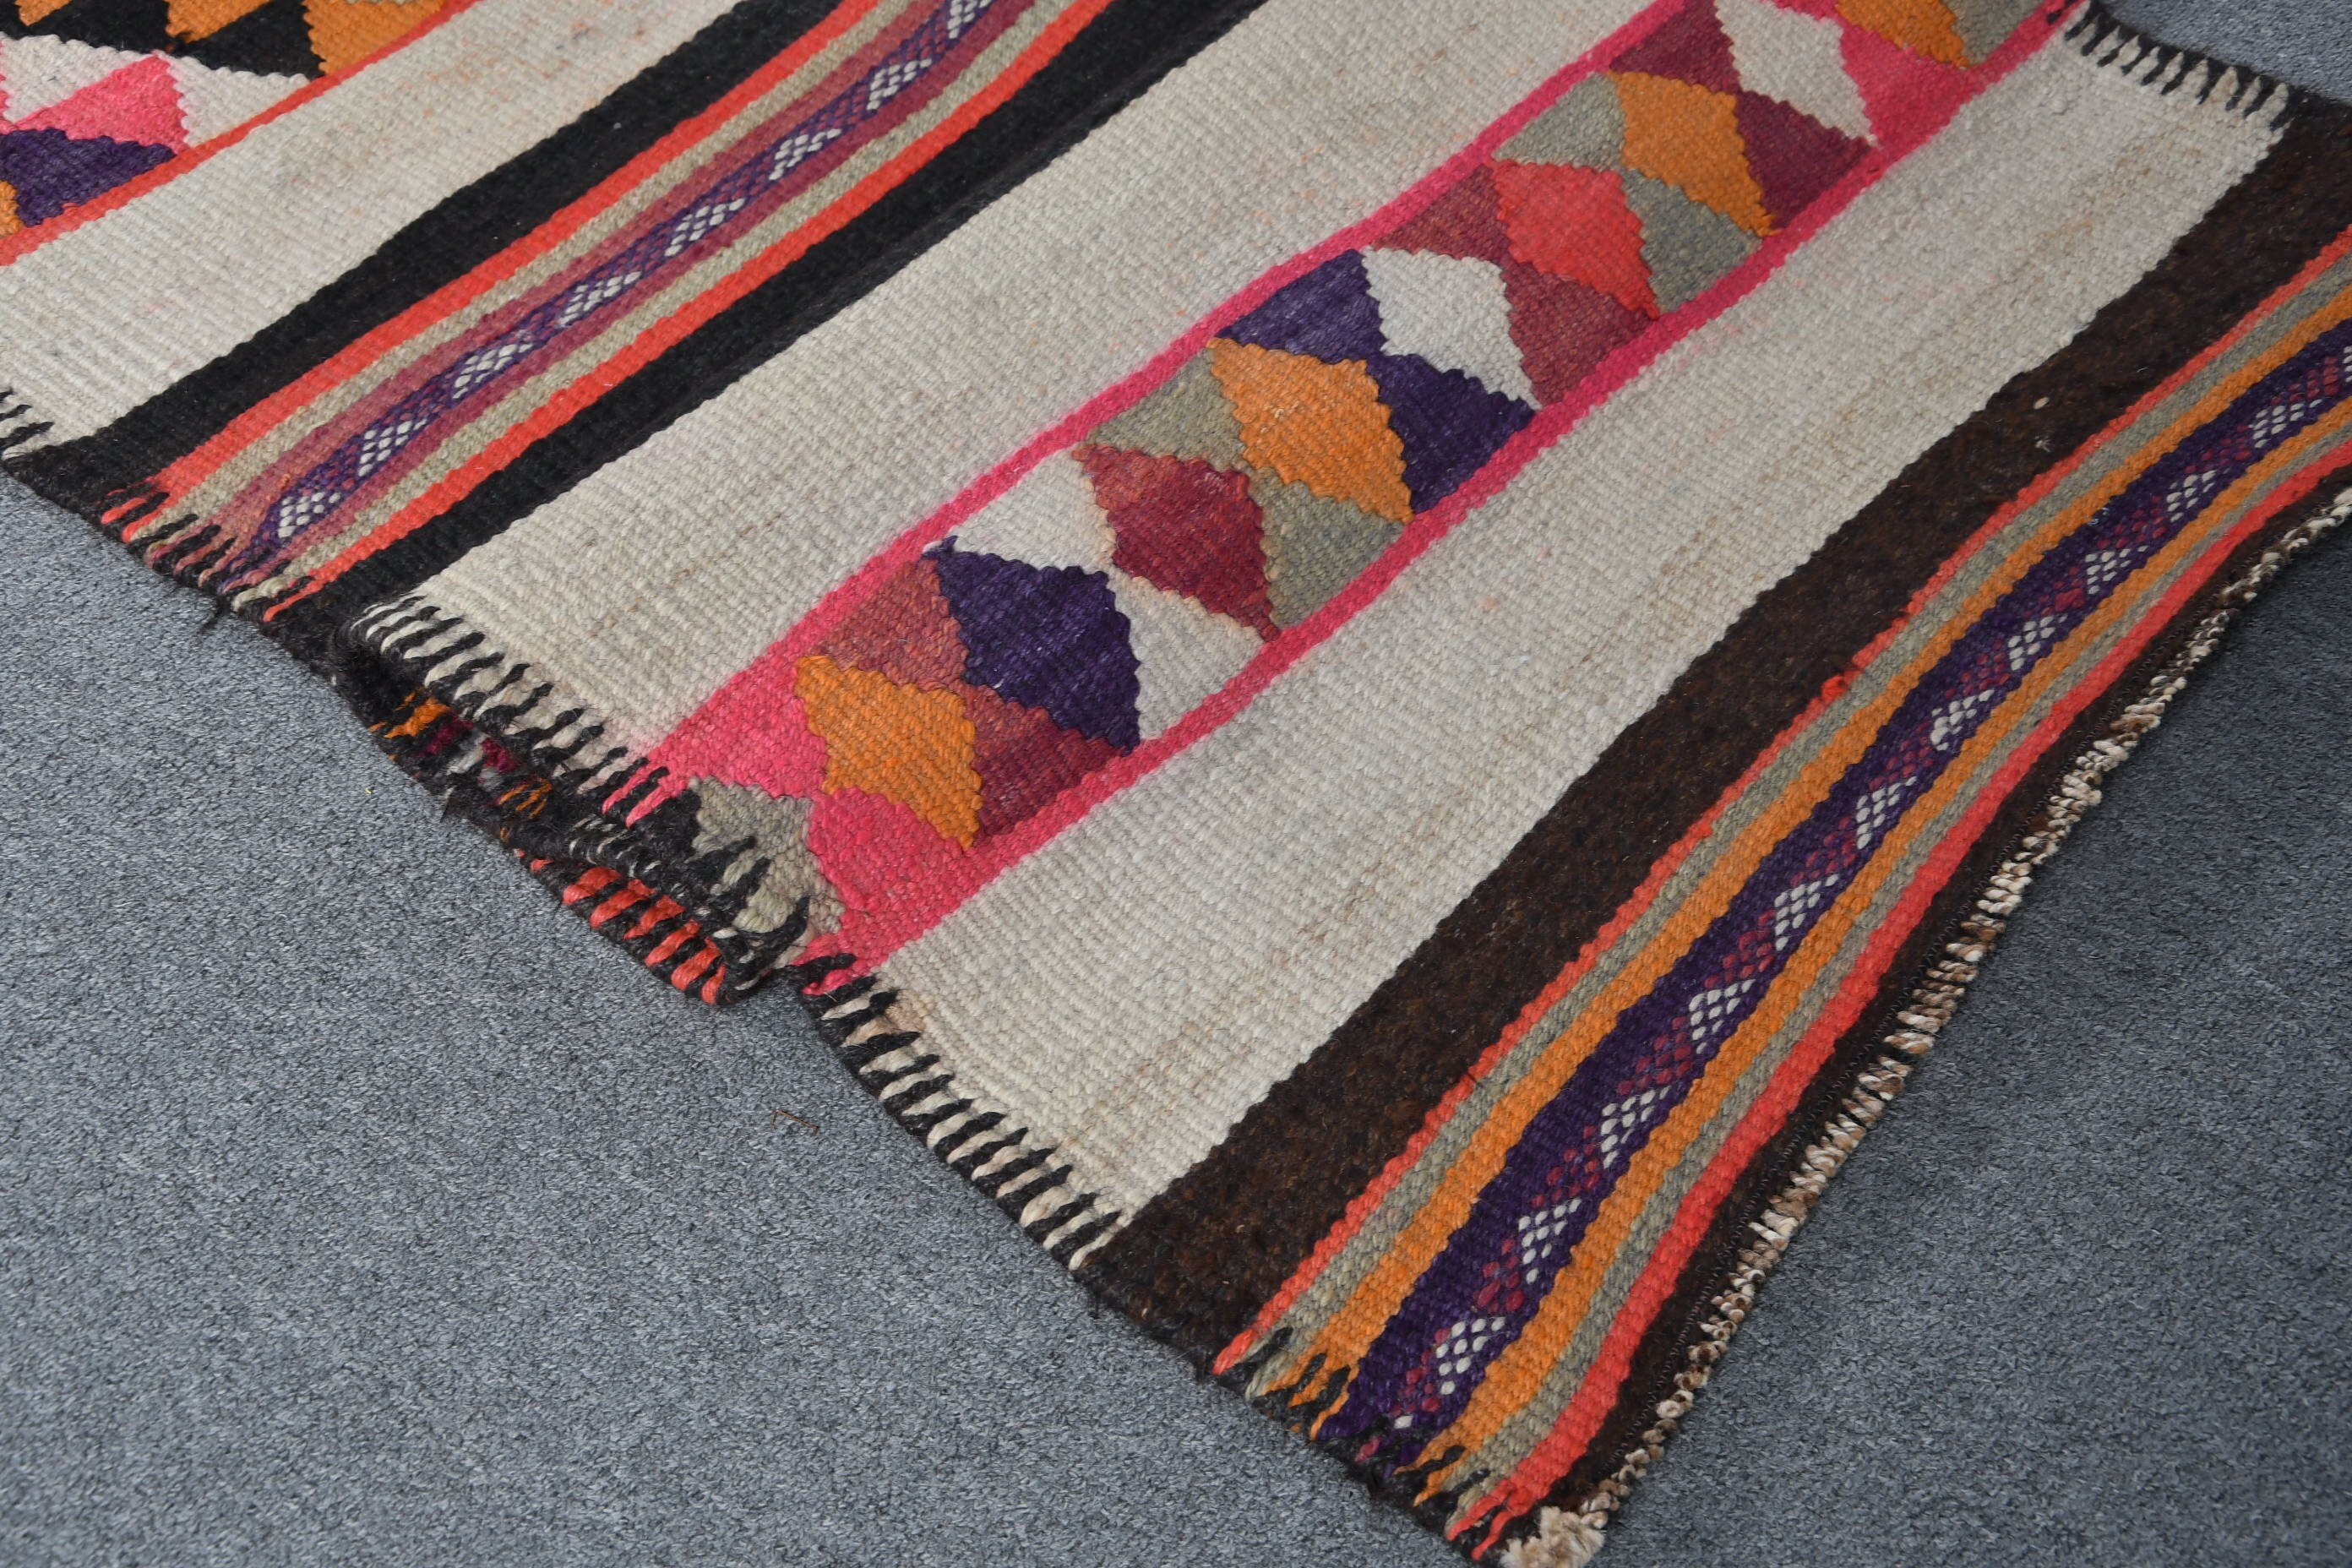 Tribal Rug, Rugs for Corridor, Pink Bedroom Rug, Turkish Rugs, Antique Rugs, Kitchen Rugs, Vintage Rug, 2.6x11 ft Runner Rug